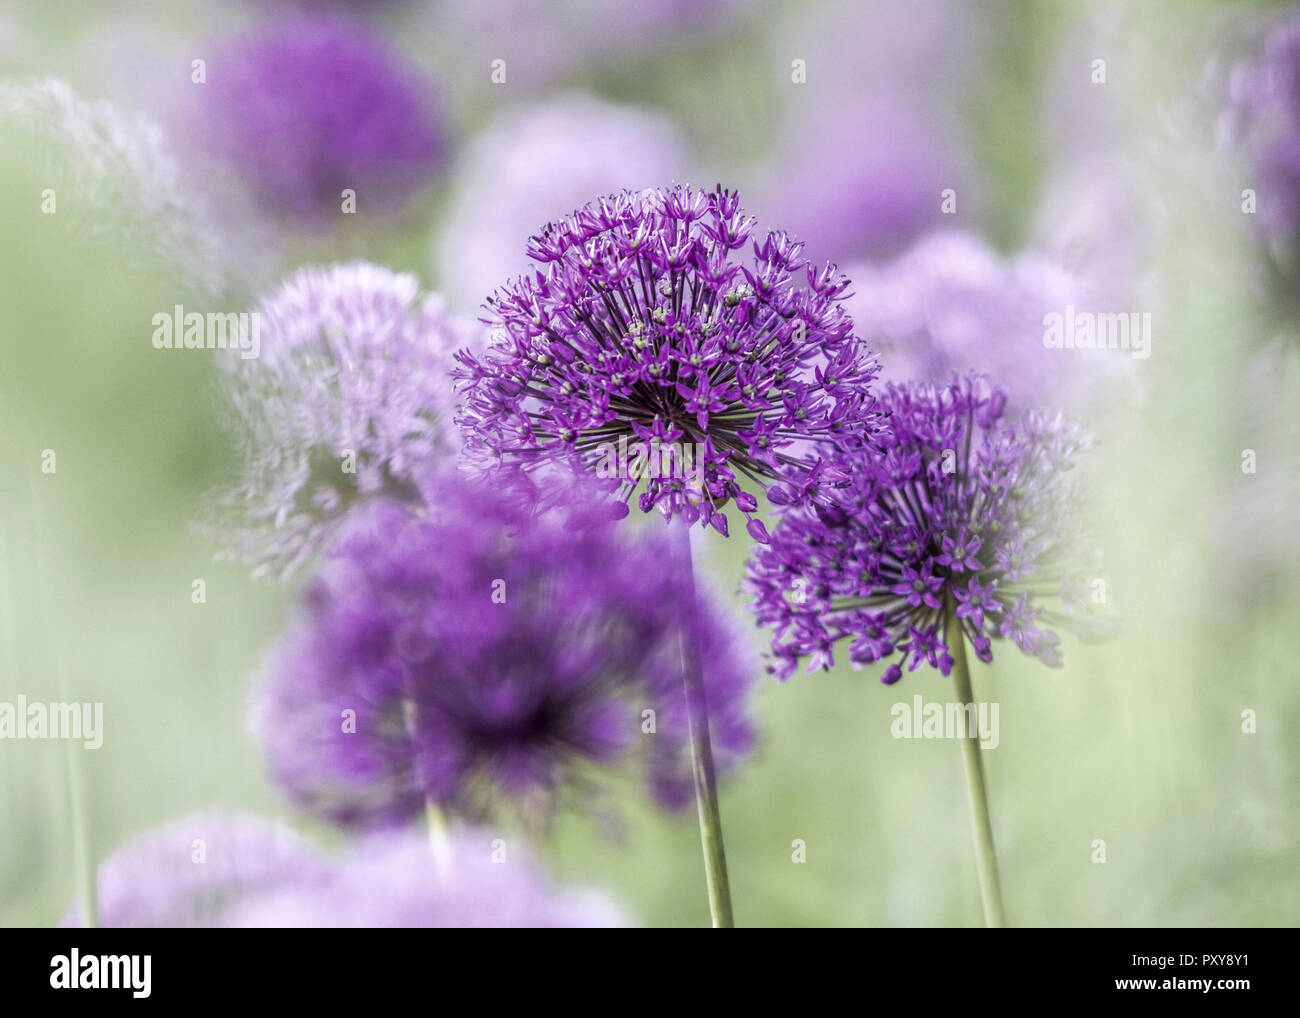 Zierlauch, violette Blueten Stock Photo